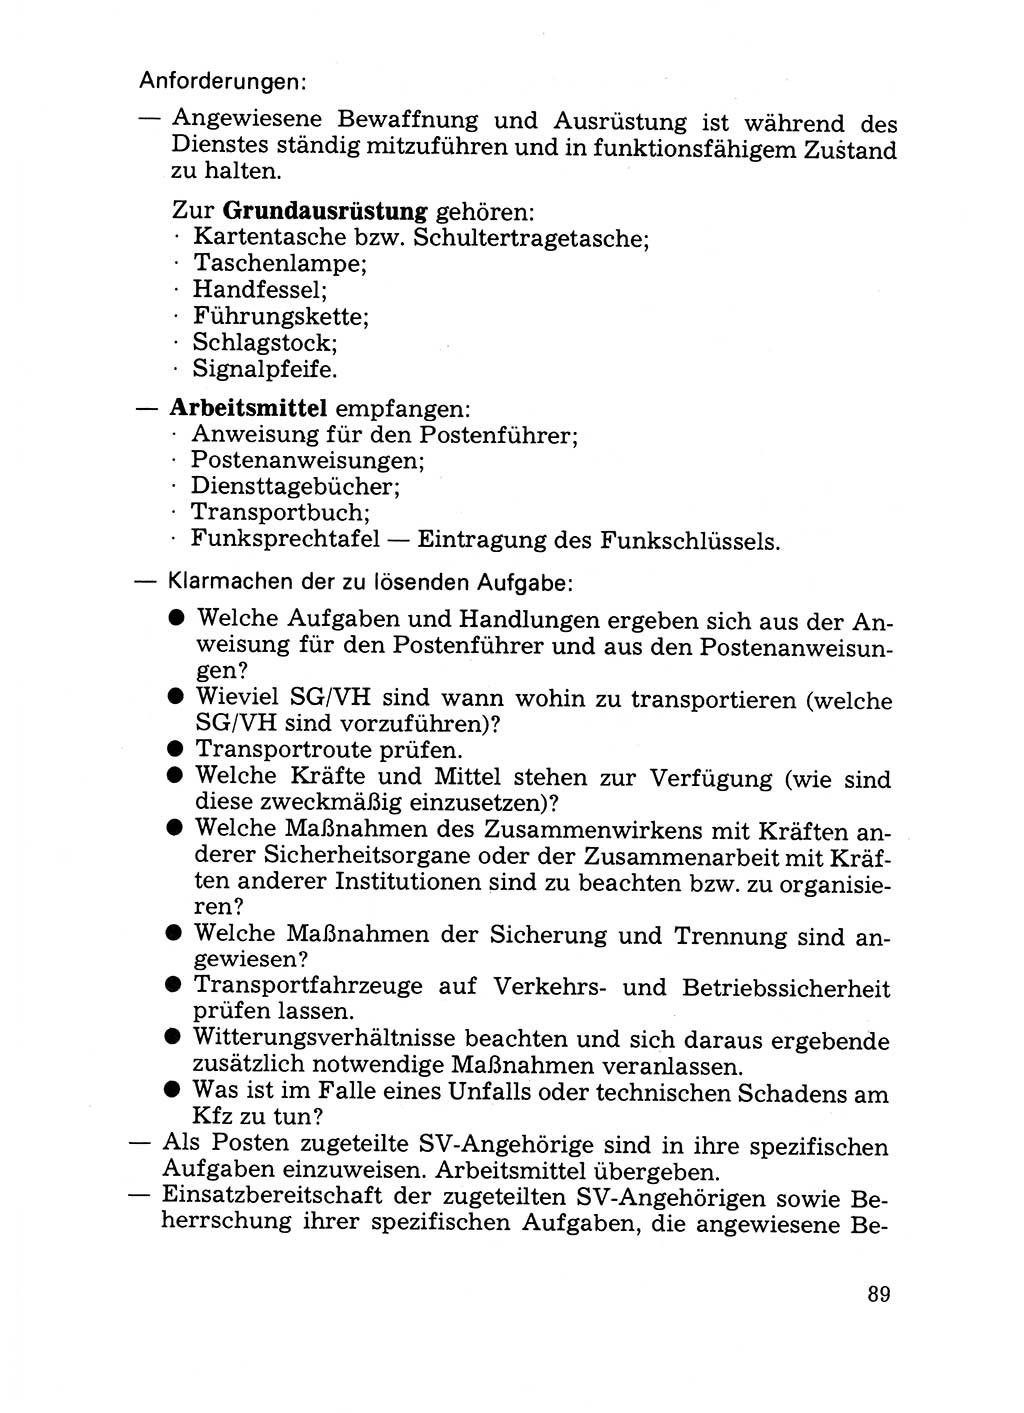 Handbuch für operative Dienste, Abteilung Strafvollzug (SV) [Ministerium des Innern (MdI) Deutsche Demokratische Republik (DDR)] 1981, Seite 89 (Hb. op. D. Abt. SV MdI DDR 1981, S. 89)